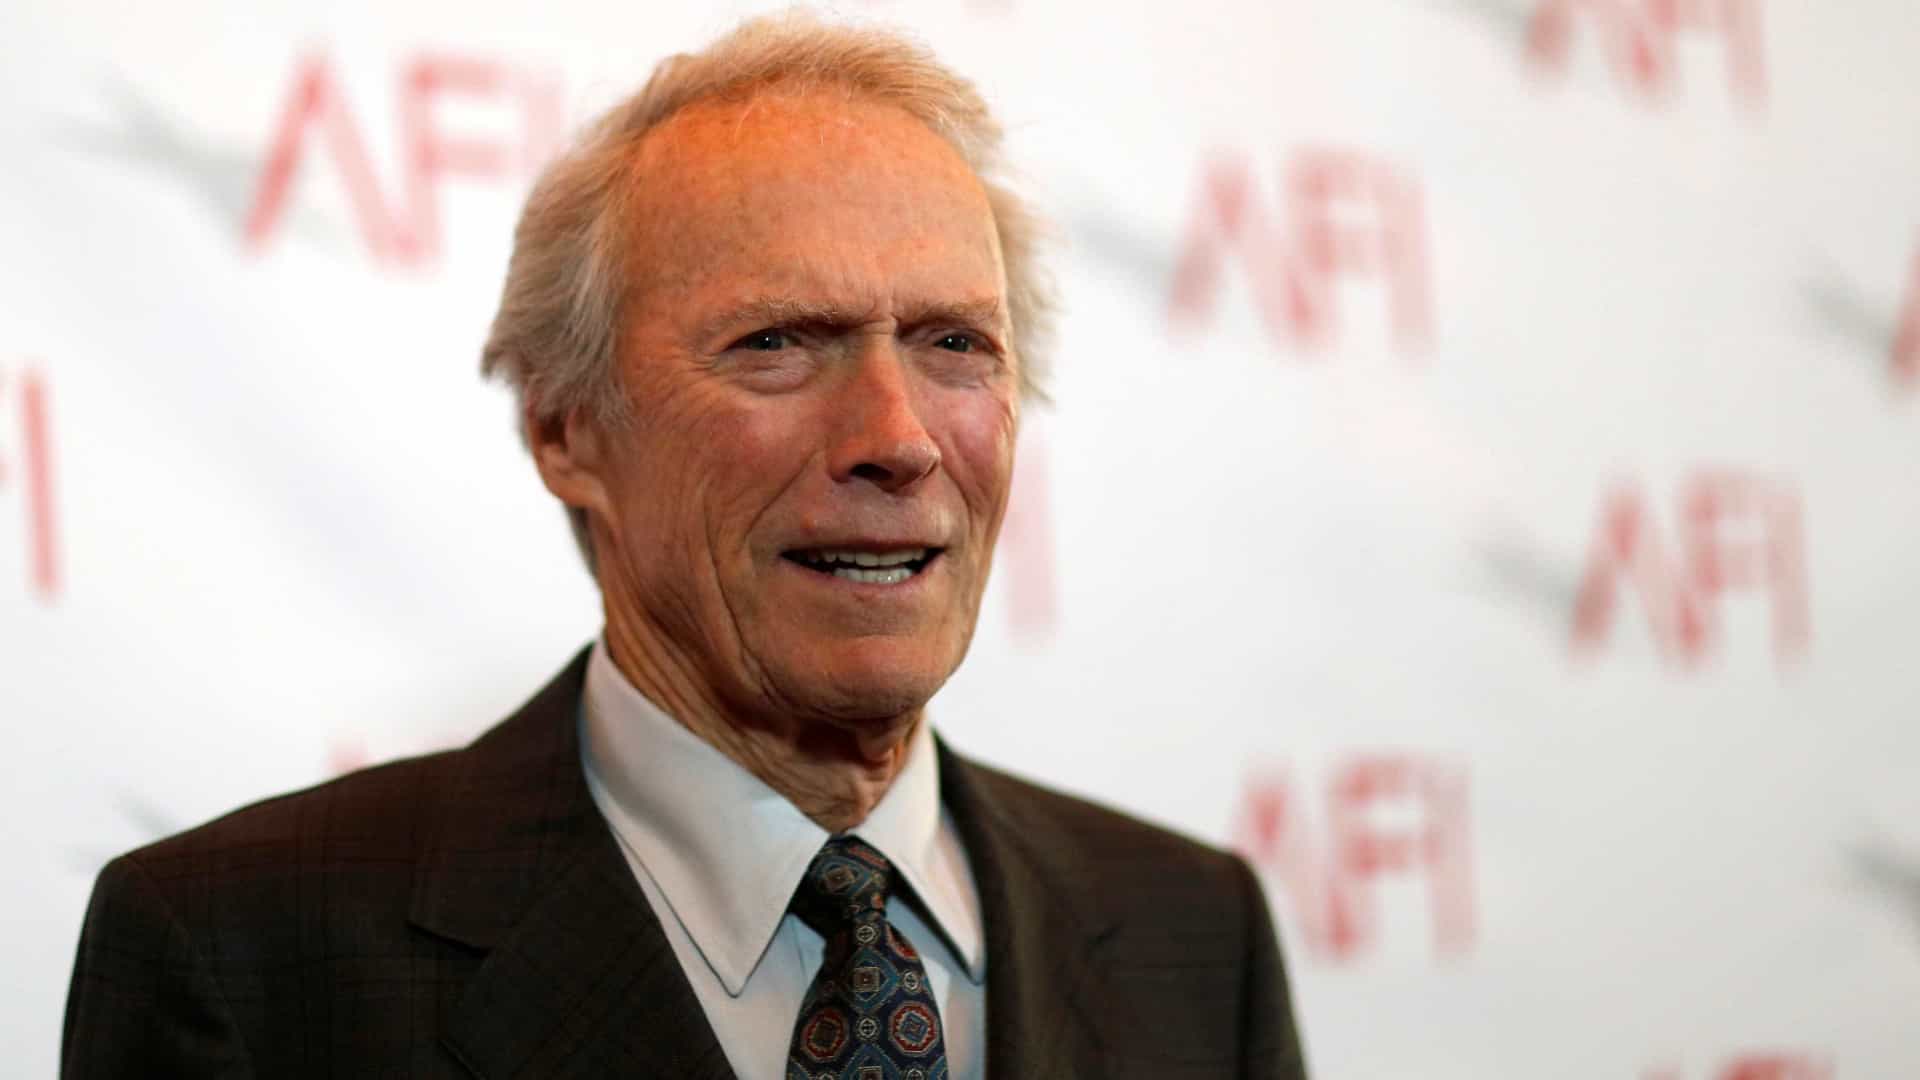 Clint Eastwood tem a pior estreia em 39 anos com novo filme